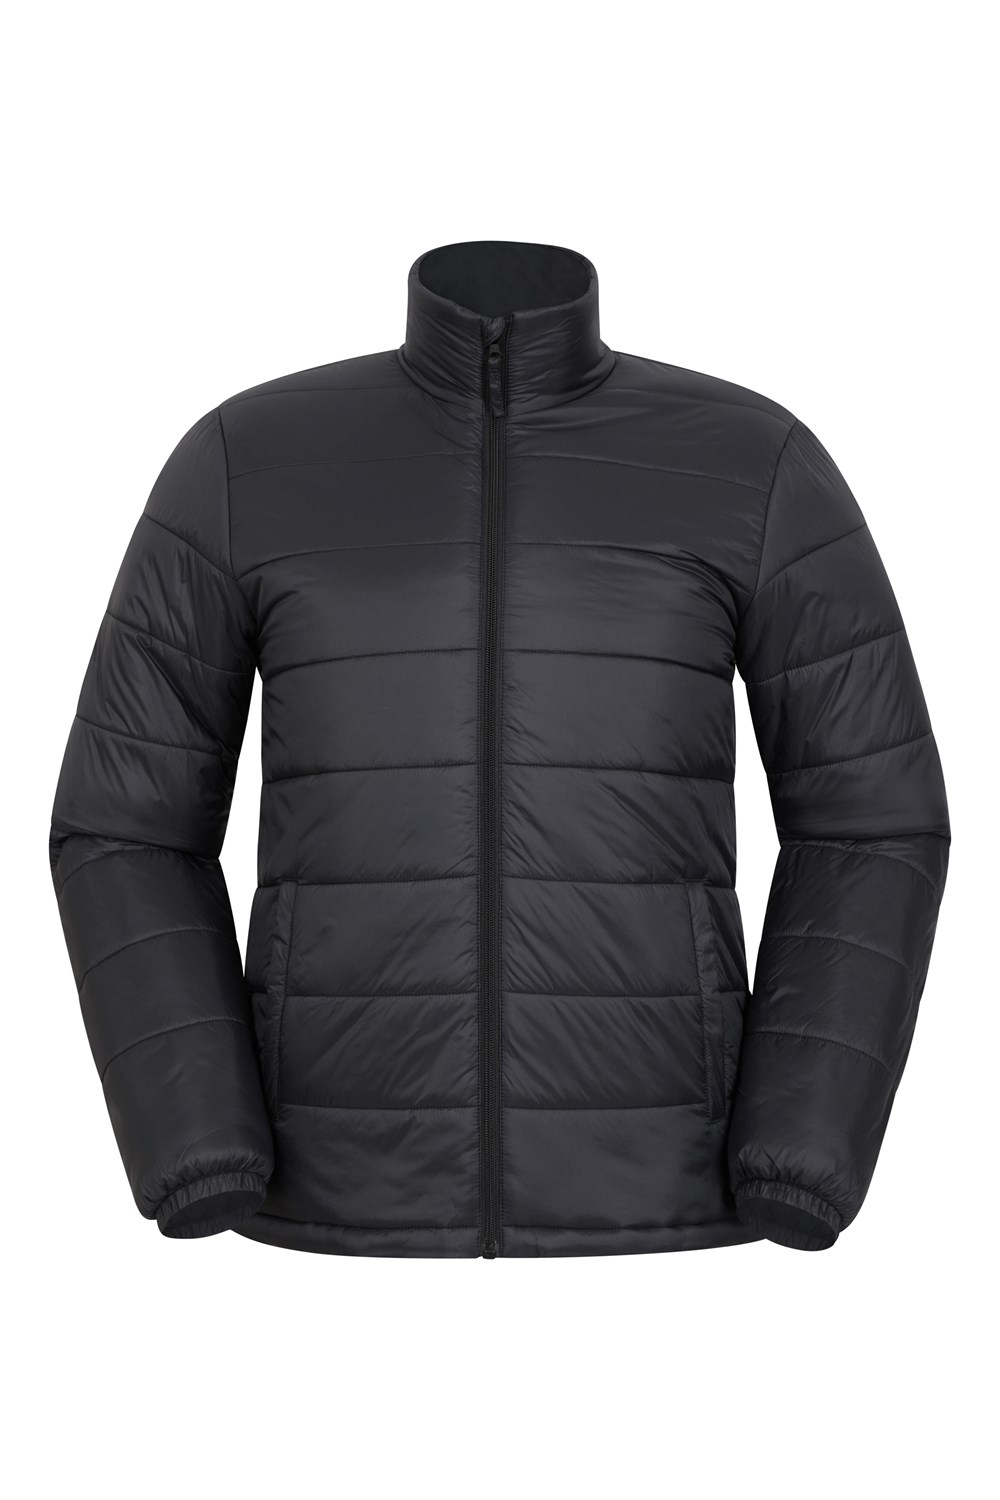 Mountain Warehouse Men's Padded Jacket Nylon Outdoor Waterproof Full ...